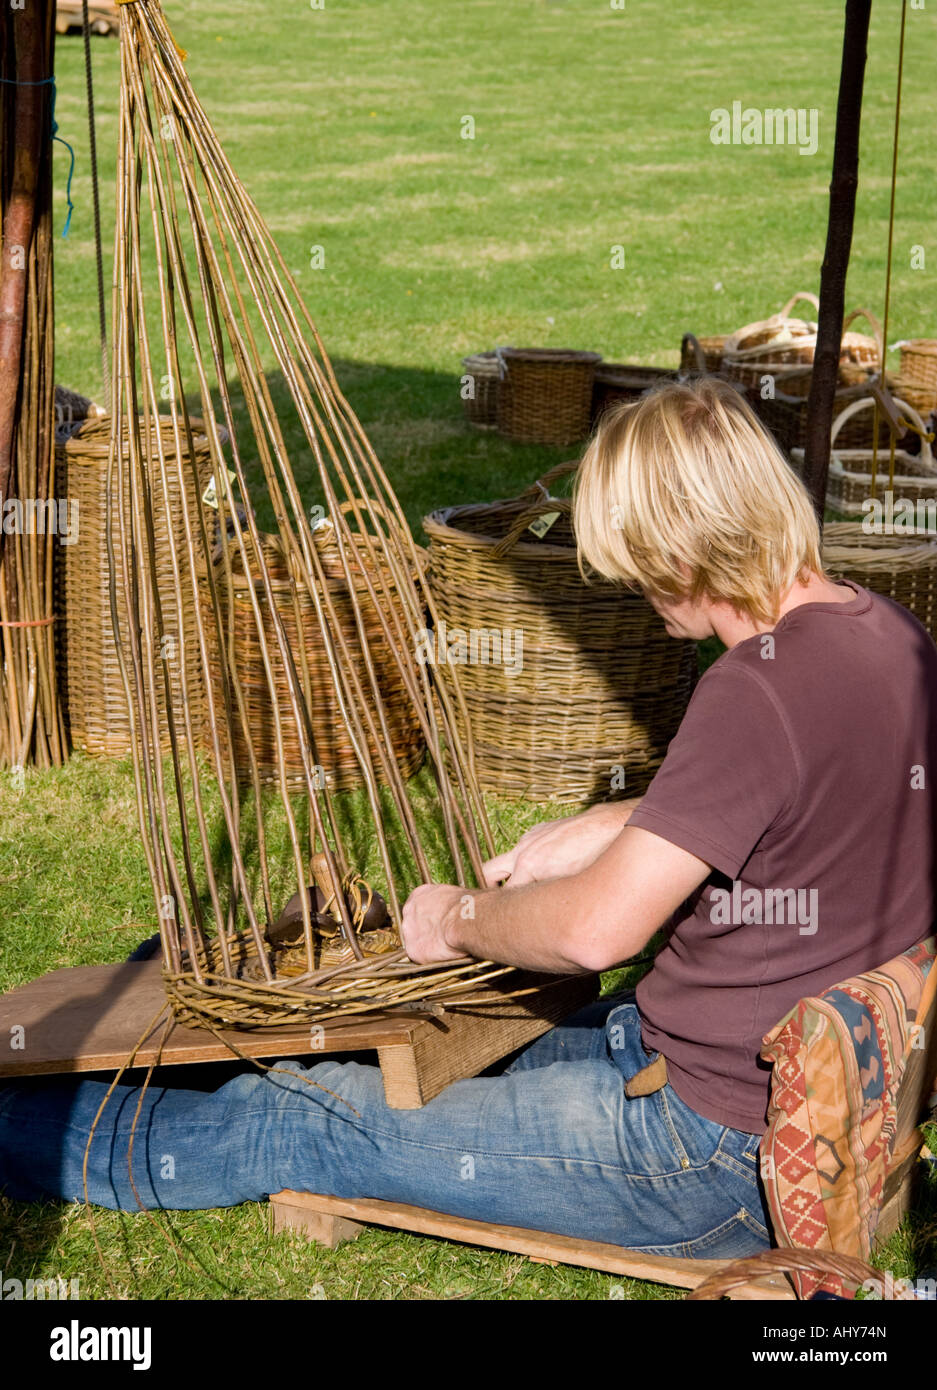 man basket weaving Stock Photo